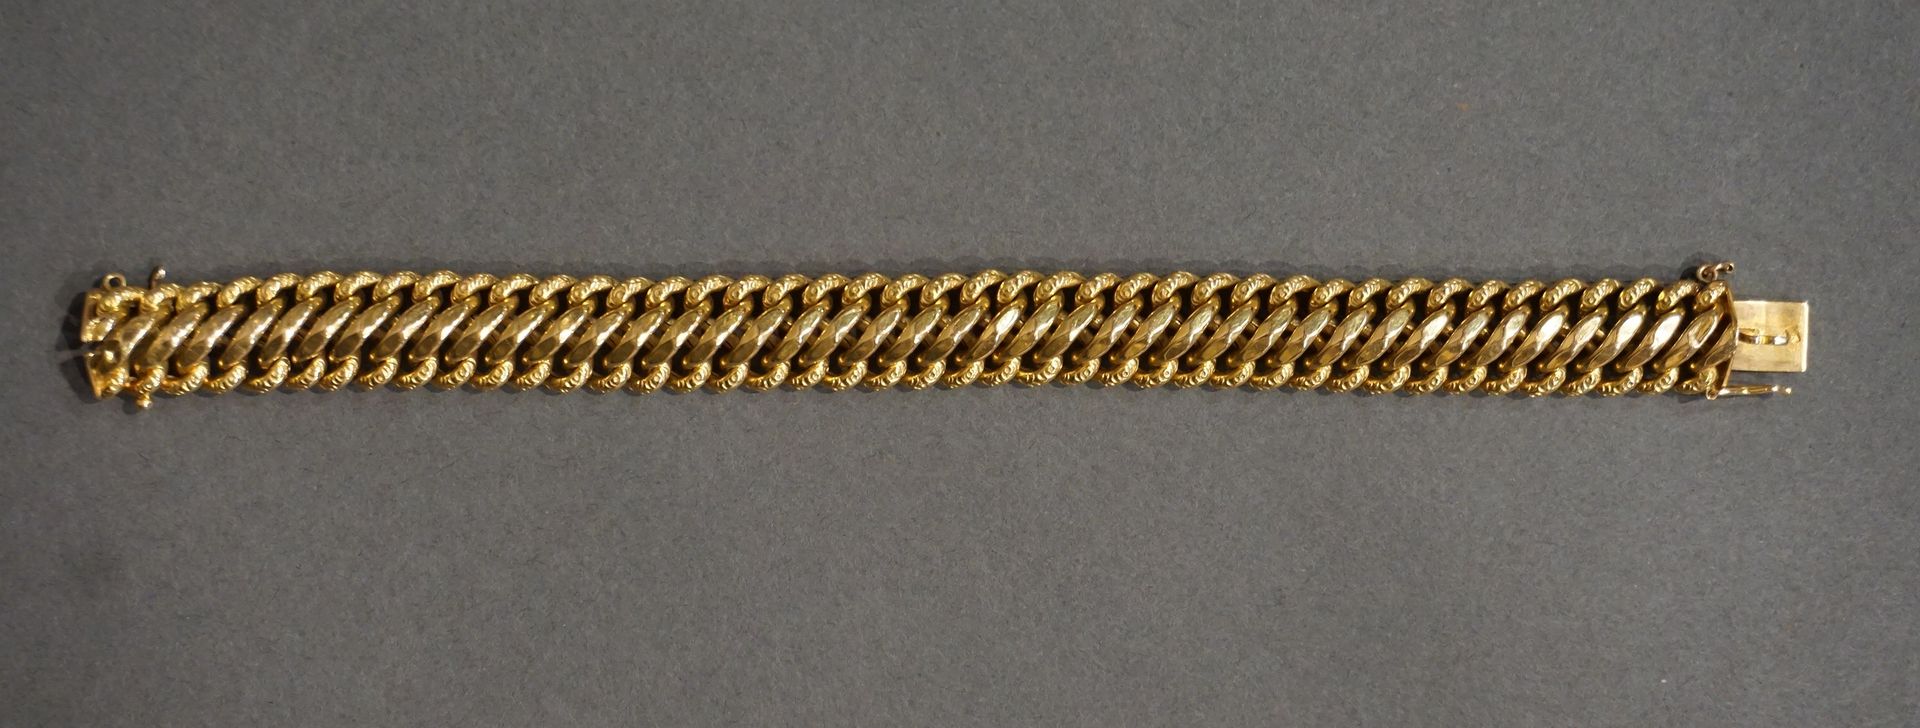 Bracelet Bracciale d'oro piatto e flessibile con maglie intrecciate, 31g